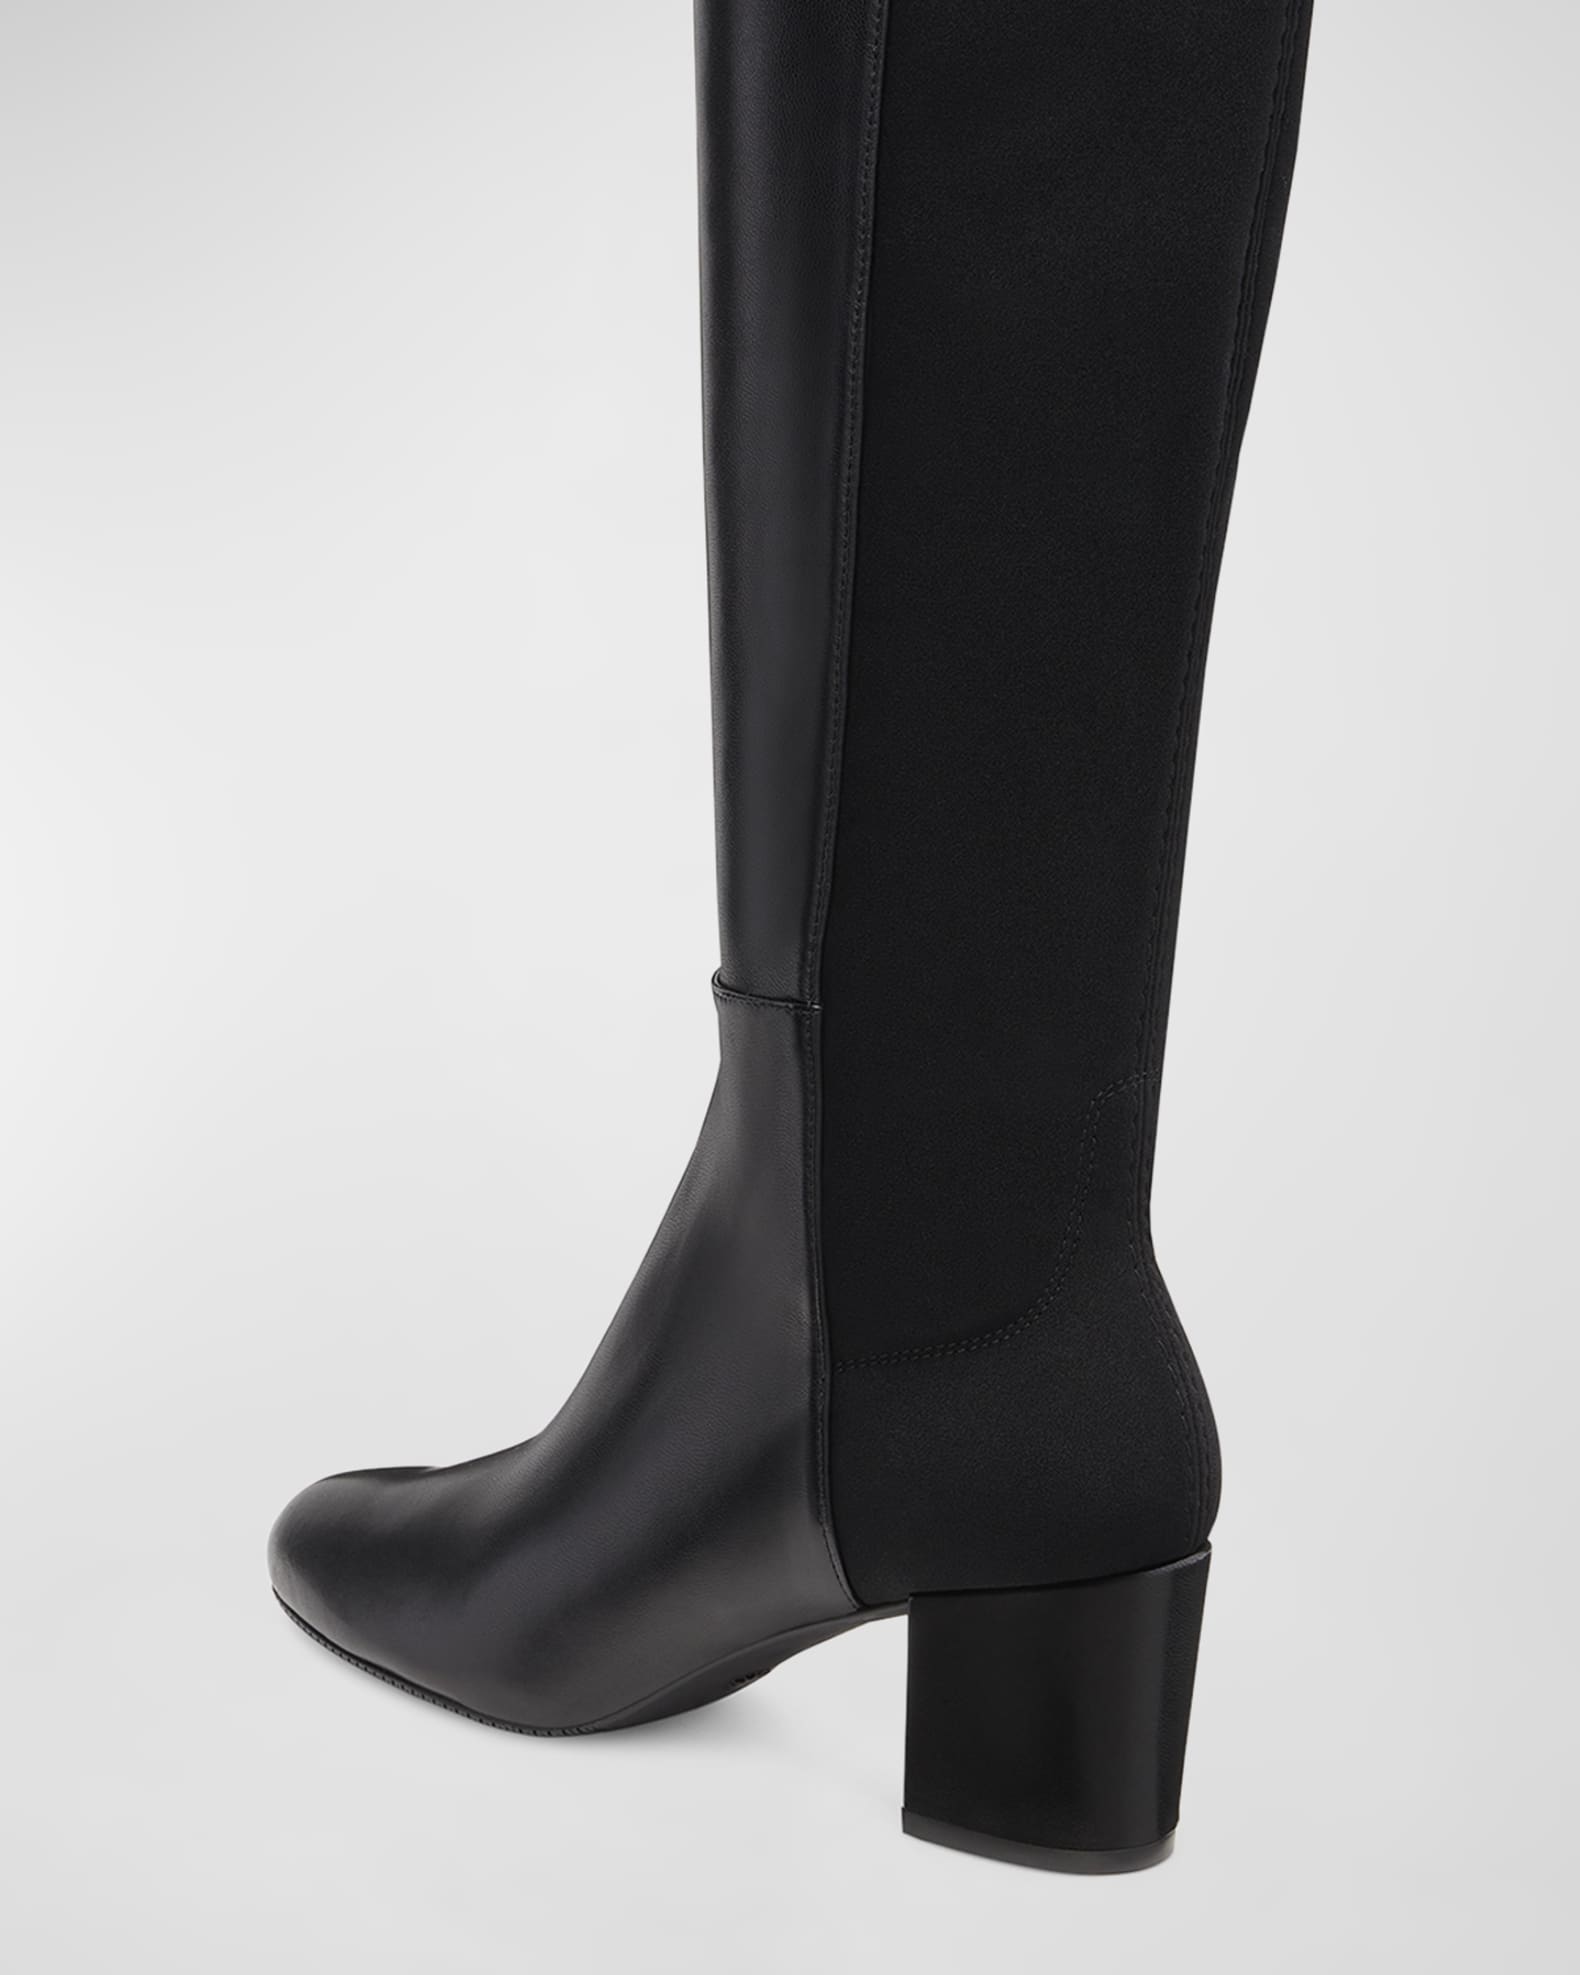 Stuart Weitzman 5050 Yuliana Leather Over-The-Knee Boots | Neiman Marcus